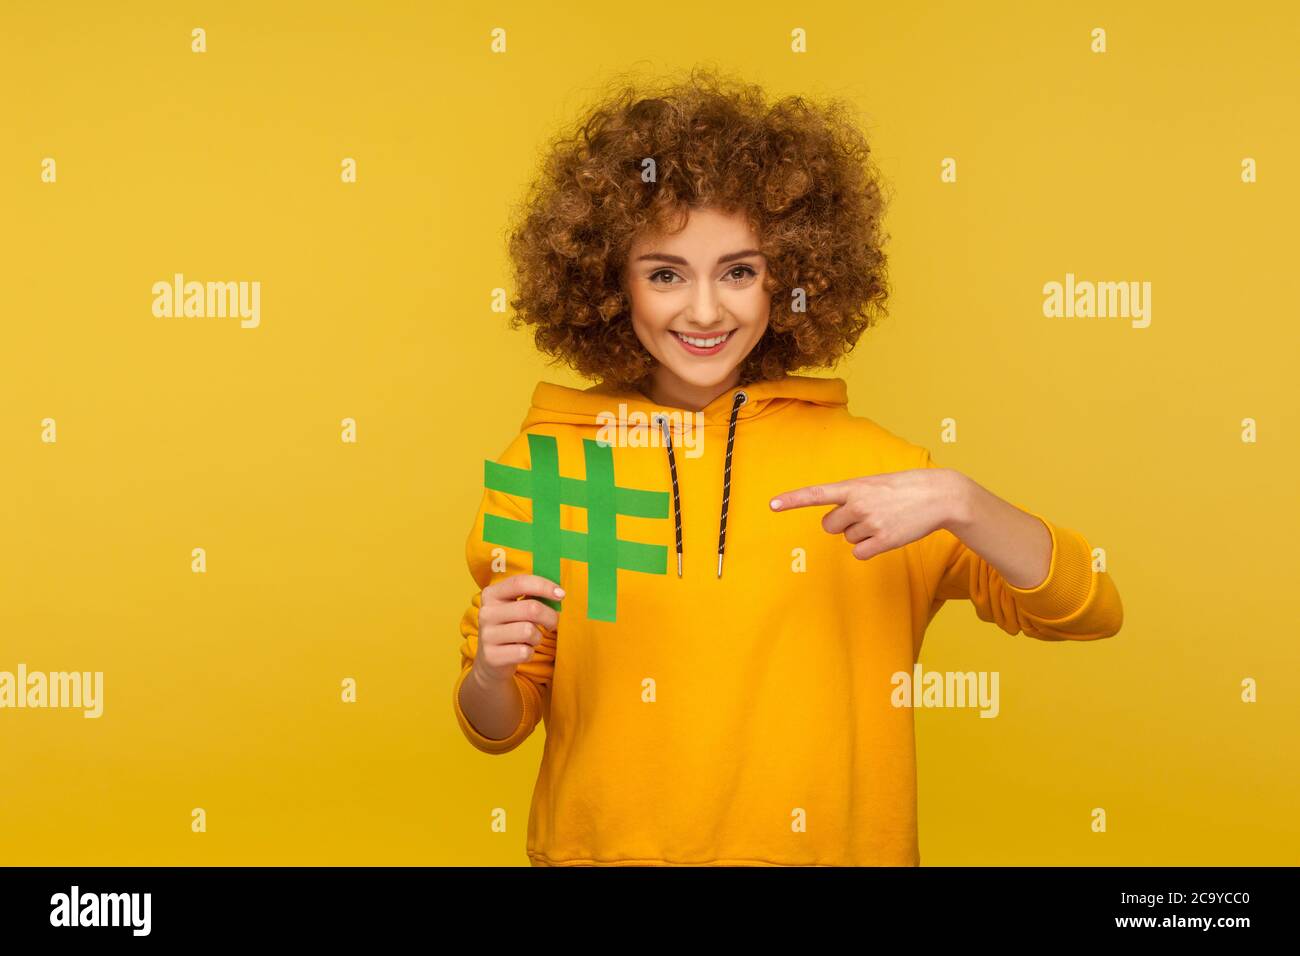 Internet-Trends. Porträt einer fröhlichen lockigen Frau im urbanen Stil Hoodie zeigt auf große Hashtag-Zeichen, was Blog-Empfehlung, Tagging Vira Stockfoto